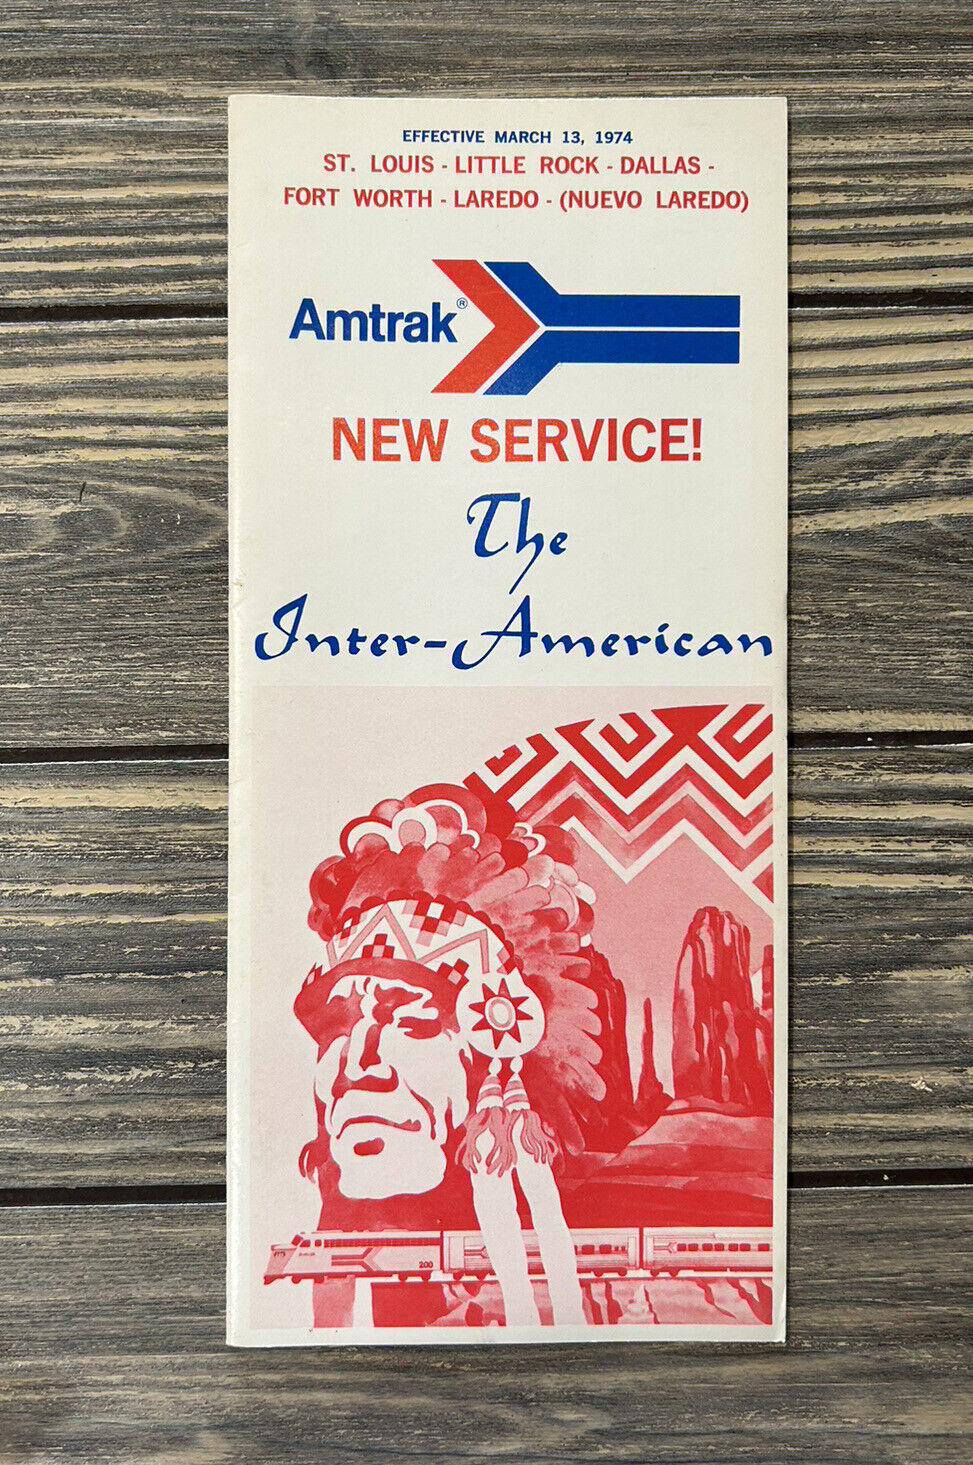 Vintage 1974 March 13 Amtrak St. Louis Little Rock Dallas Schedule Timetable